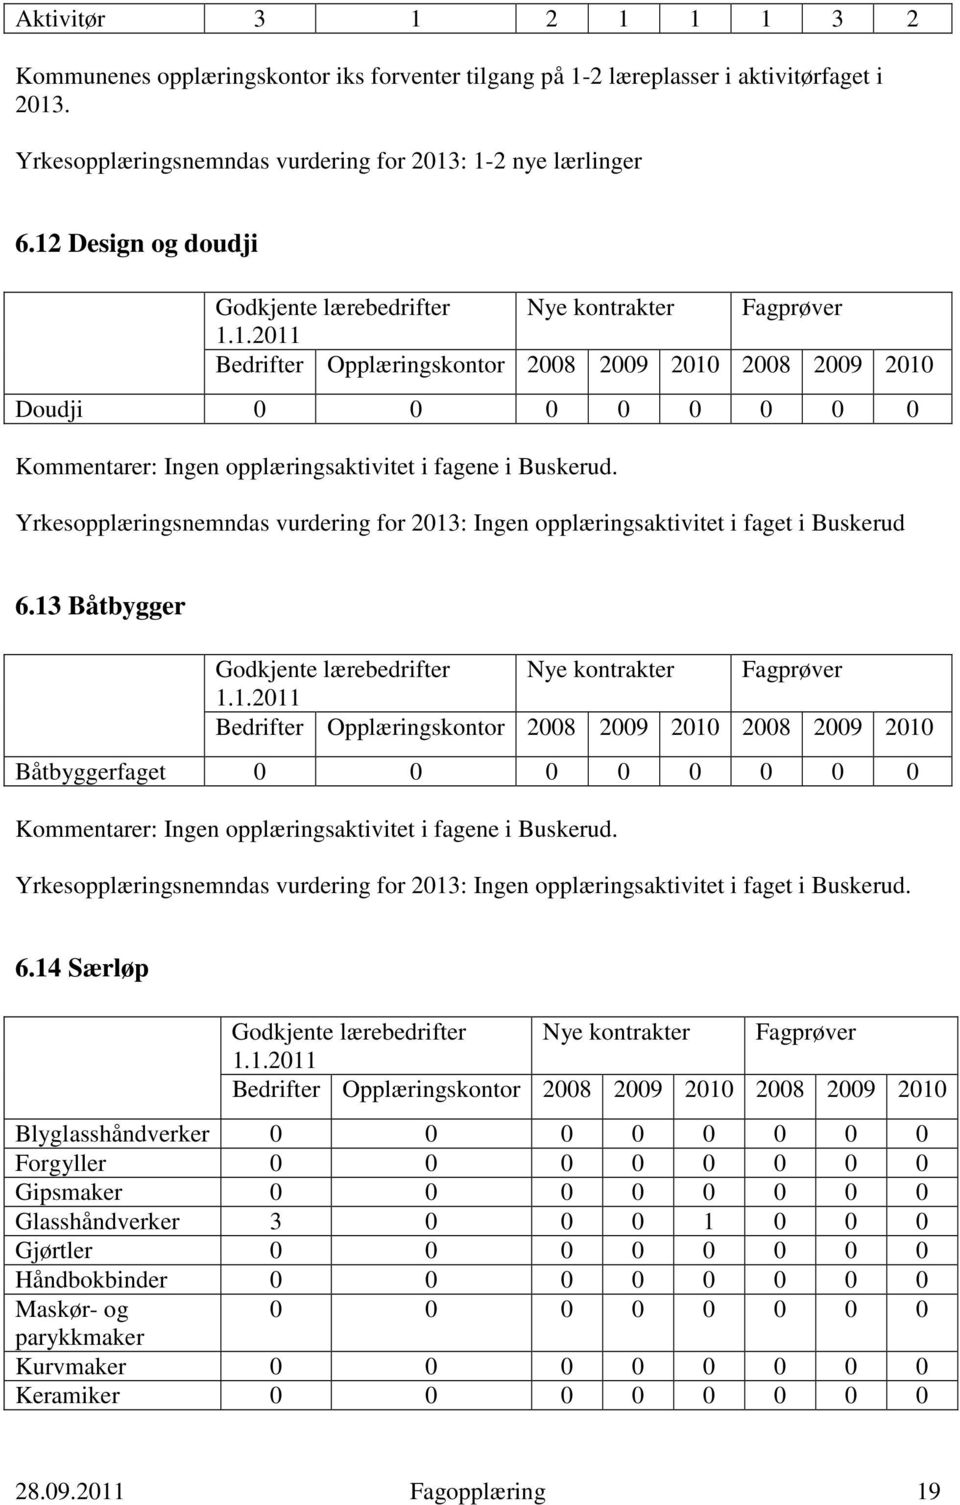 13 Båtbygger Båtbyggerfaget 0 0 0 0 0 0 0 0 Ingen opplæringsaktivitet i fagene i Buskerud. Yrkesopplæringsnemndas vurdering for 2013: Ingen opplæringsaktivitet i faget i Buskerud. 6.